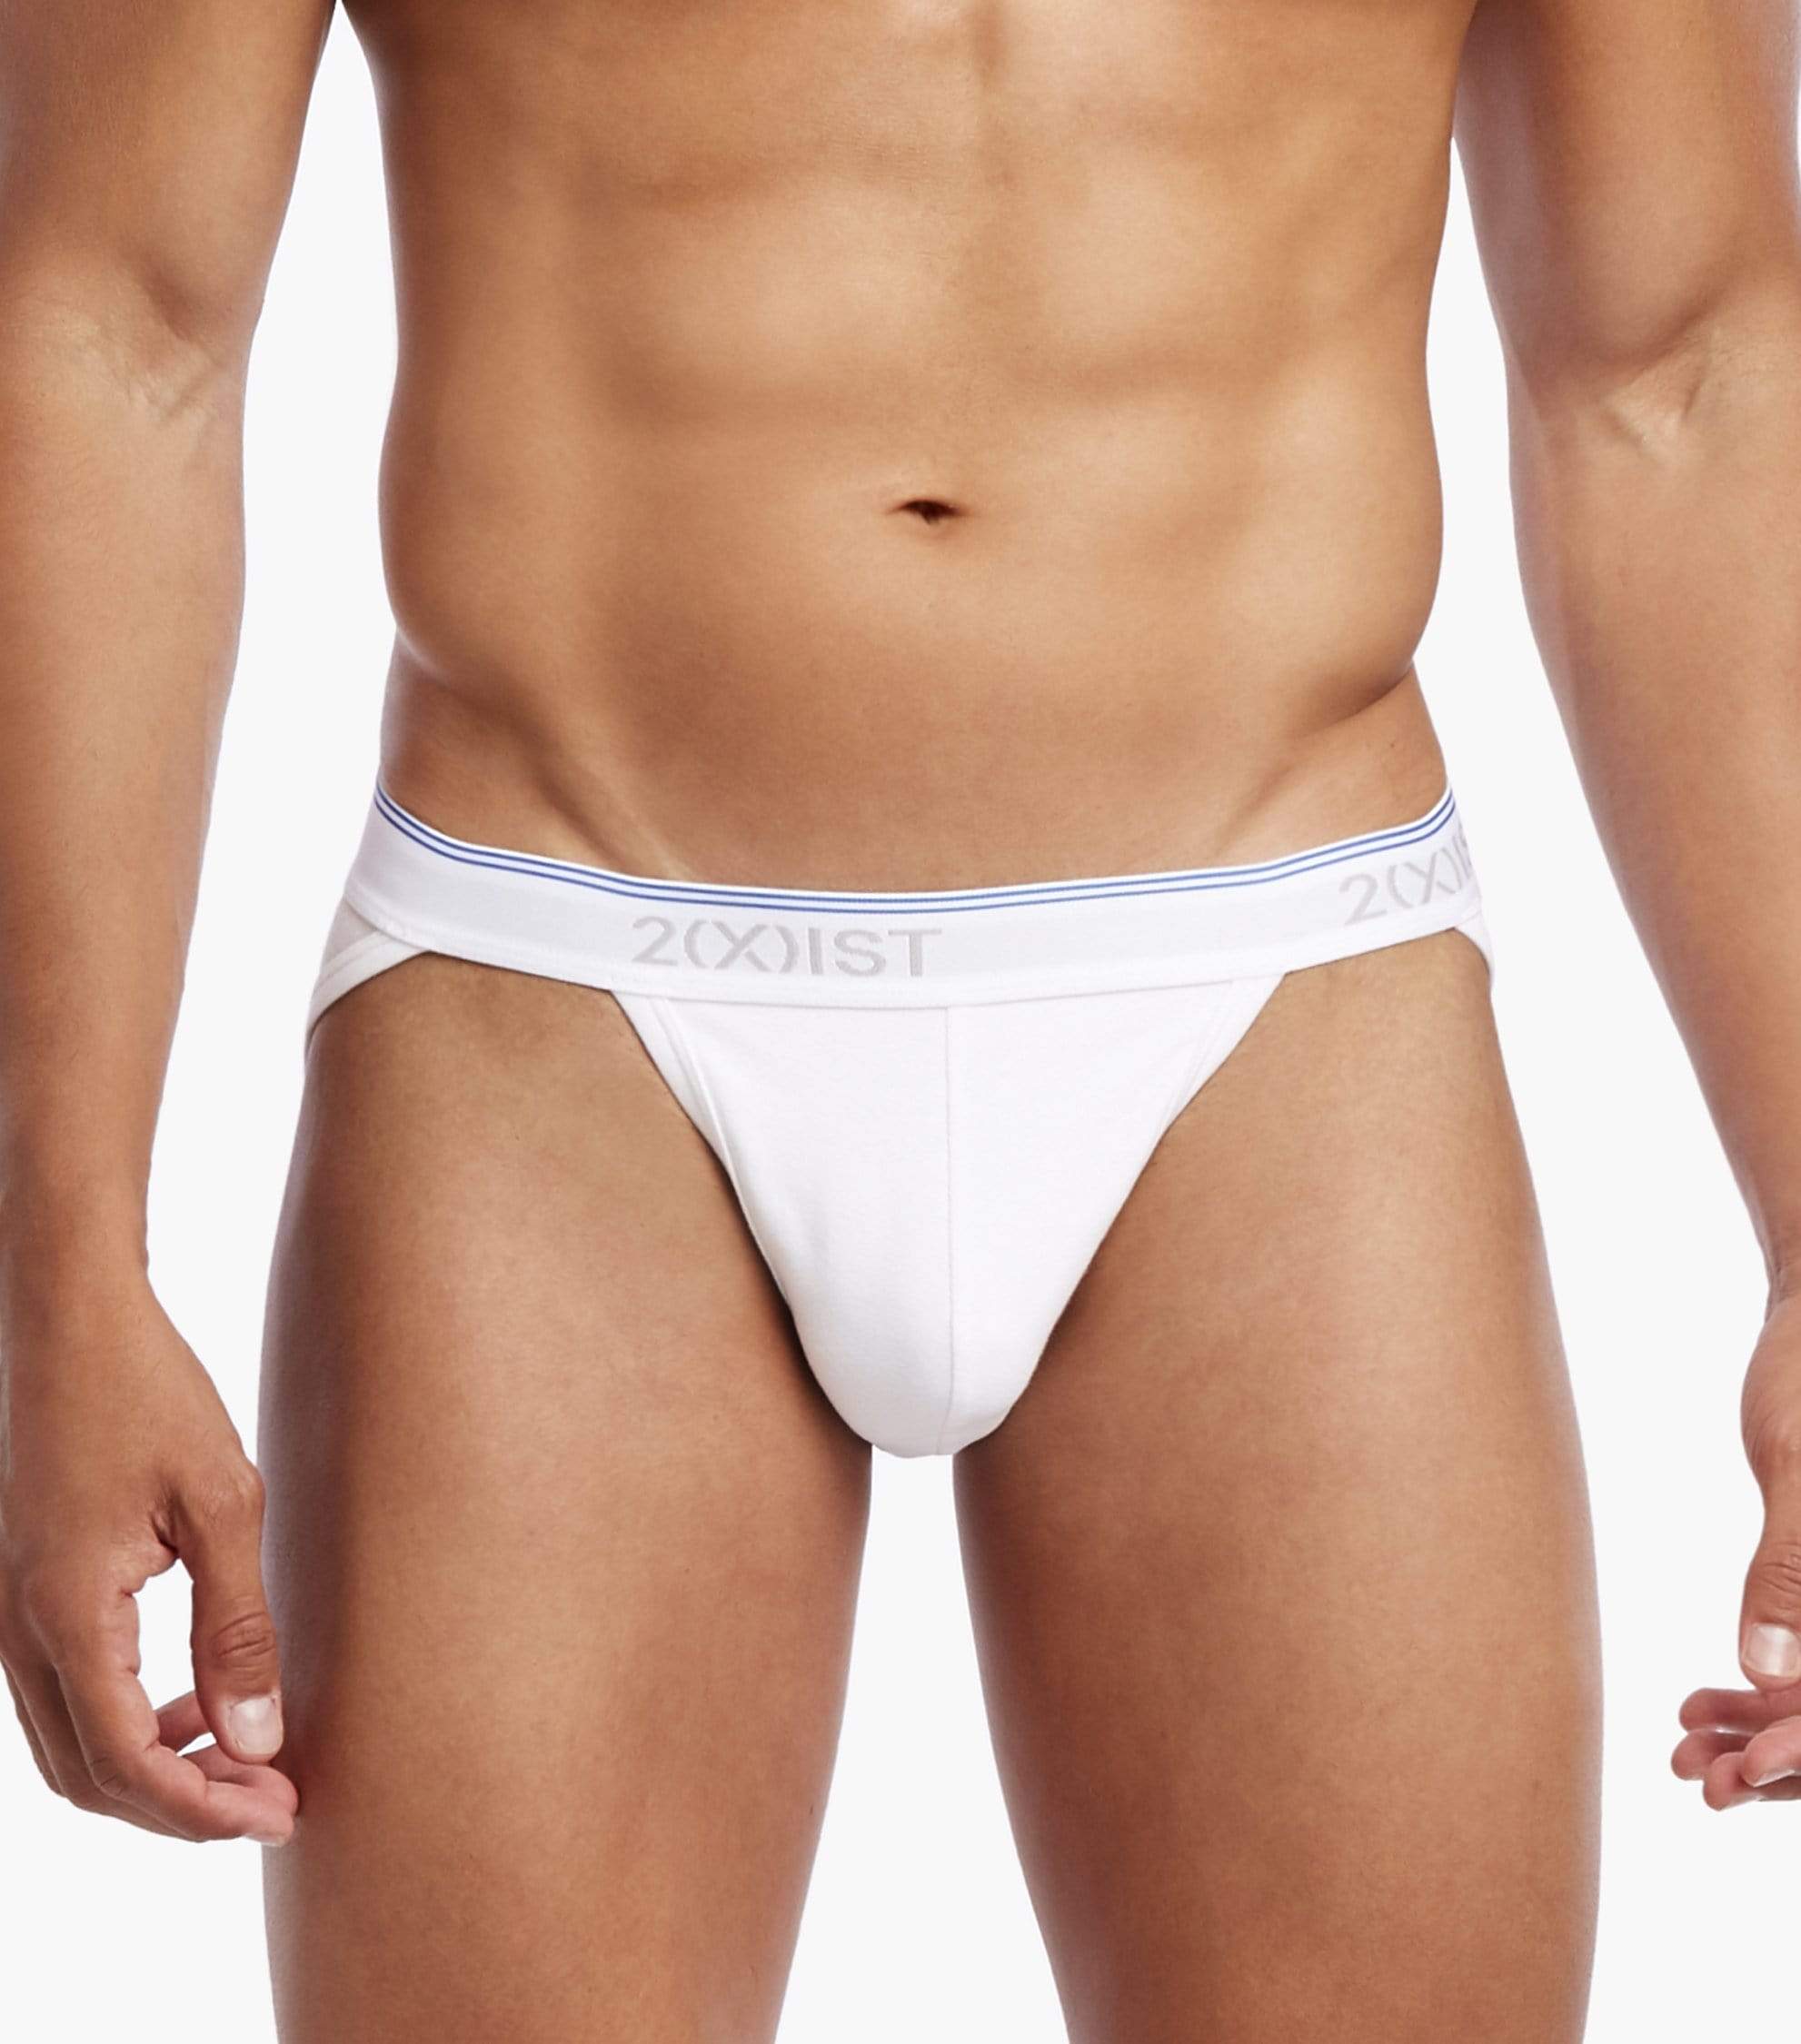 Calvin Klein Underwear THONG MODERN STRETCH 3 PACK - Briefs